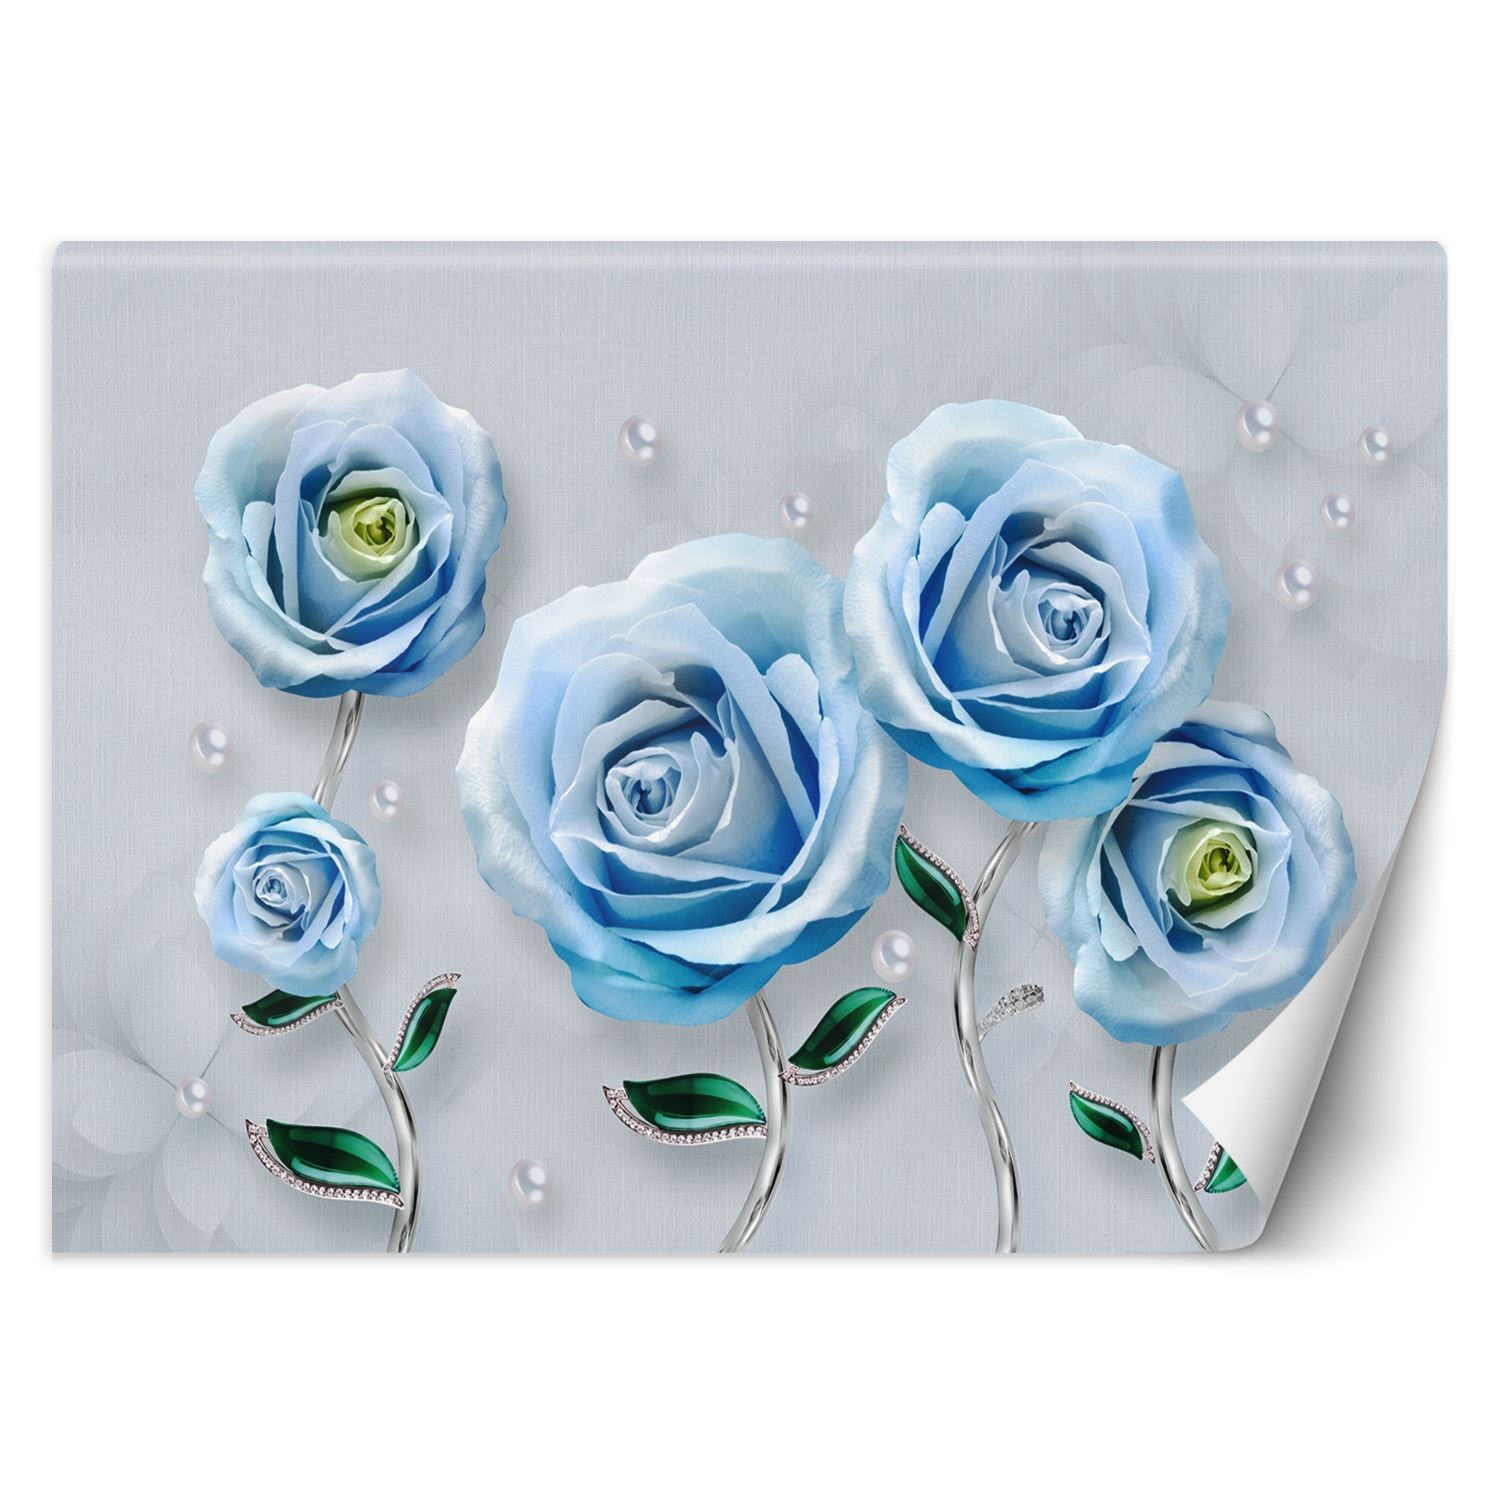 Trend24 – Behang – Blauwe Rozen 3D – Vliesbehang – Fotobehang Bloemen – Behang Woonkamer – 350x245x2 cm – Incl. behanglijm